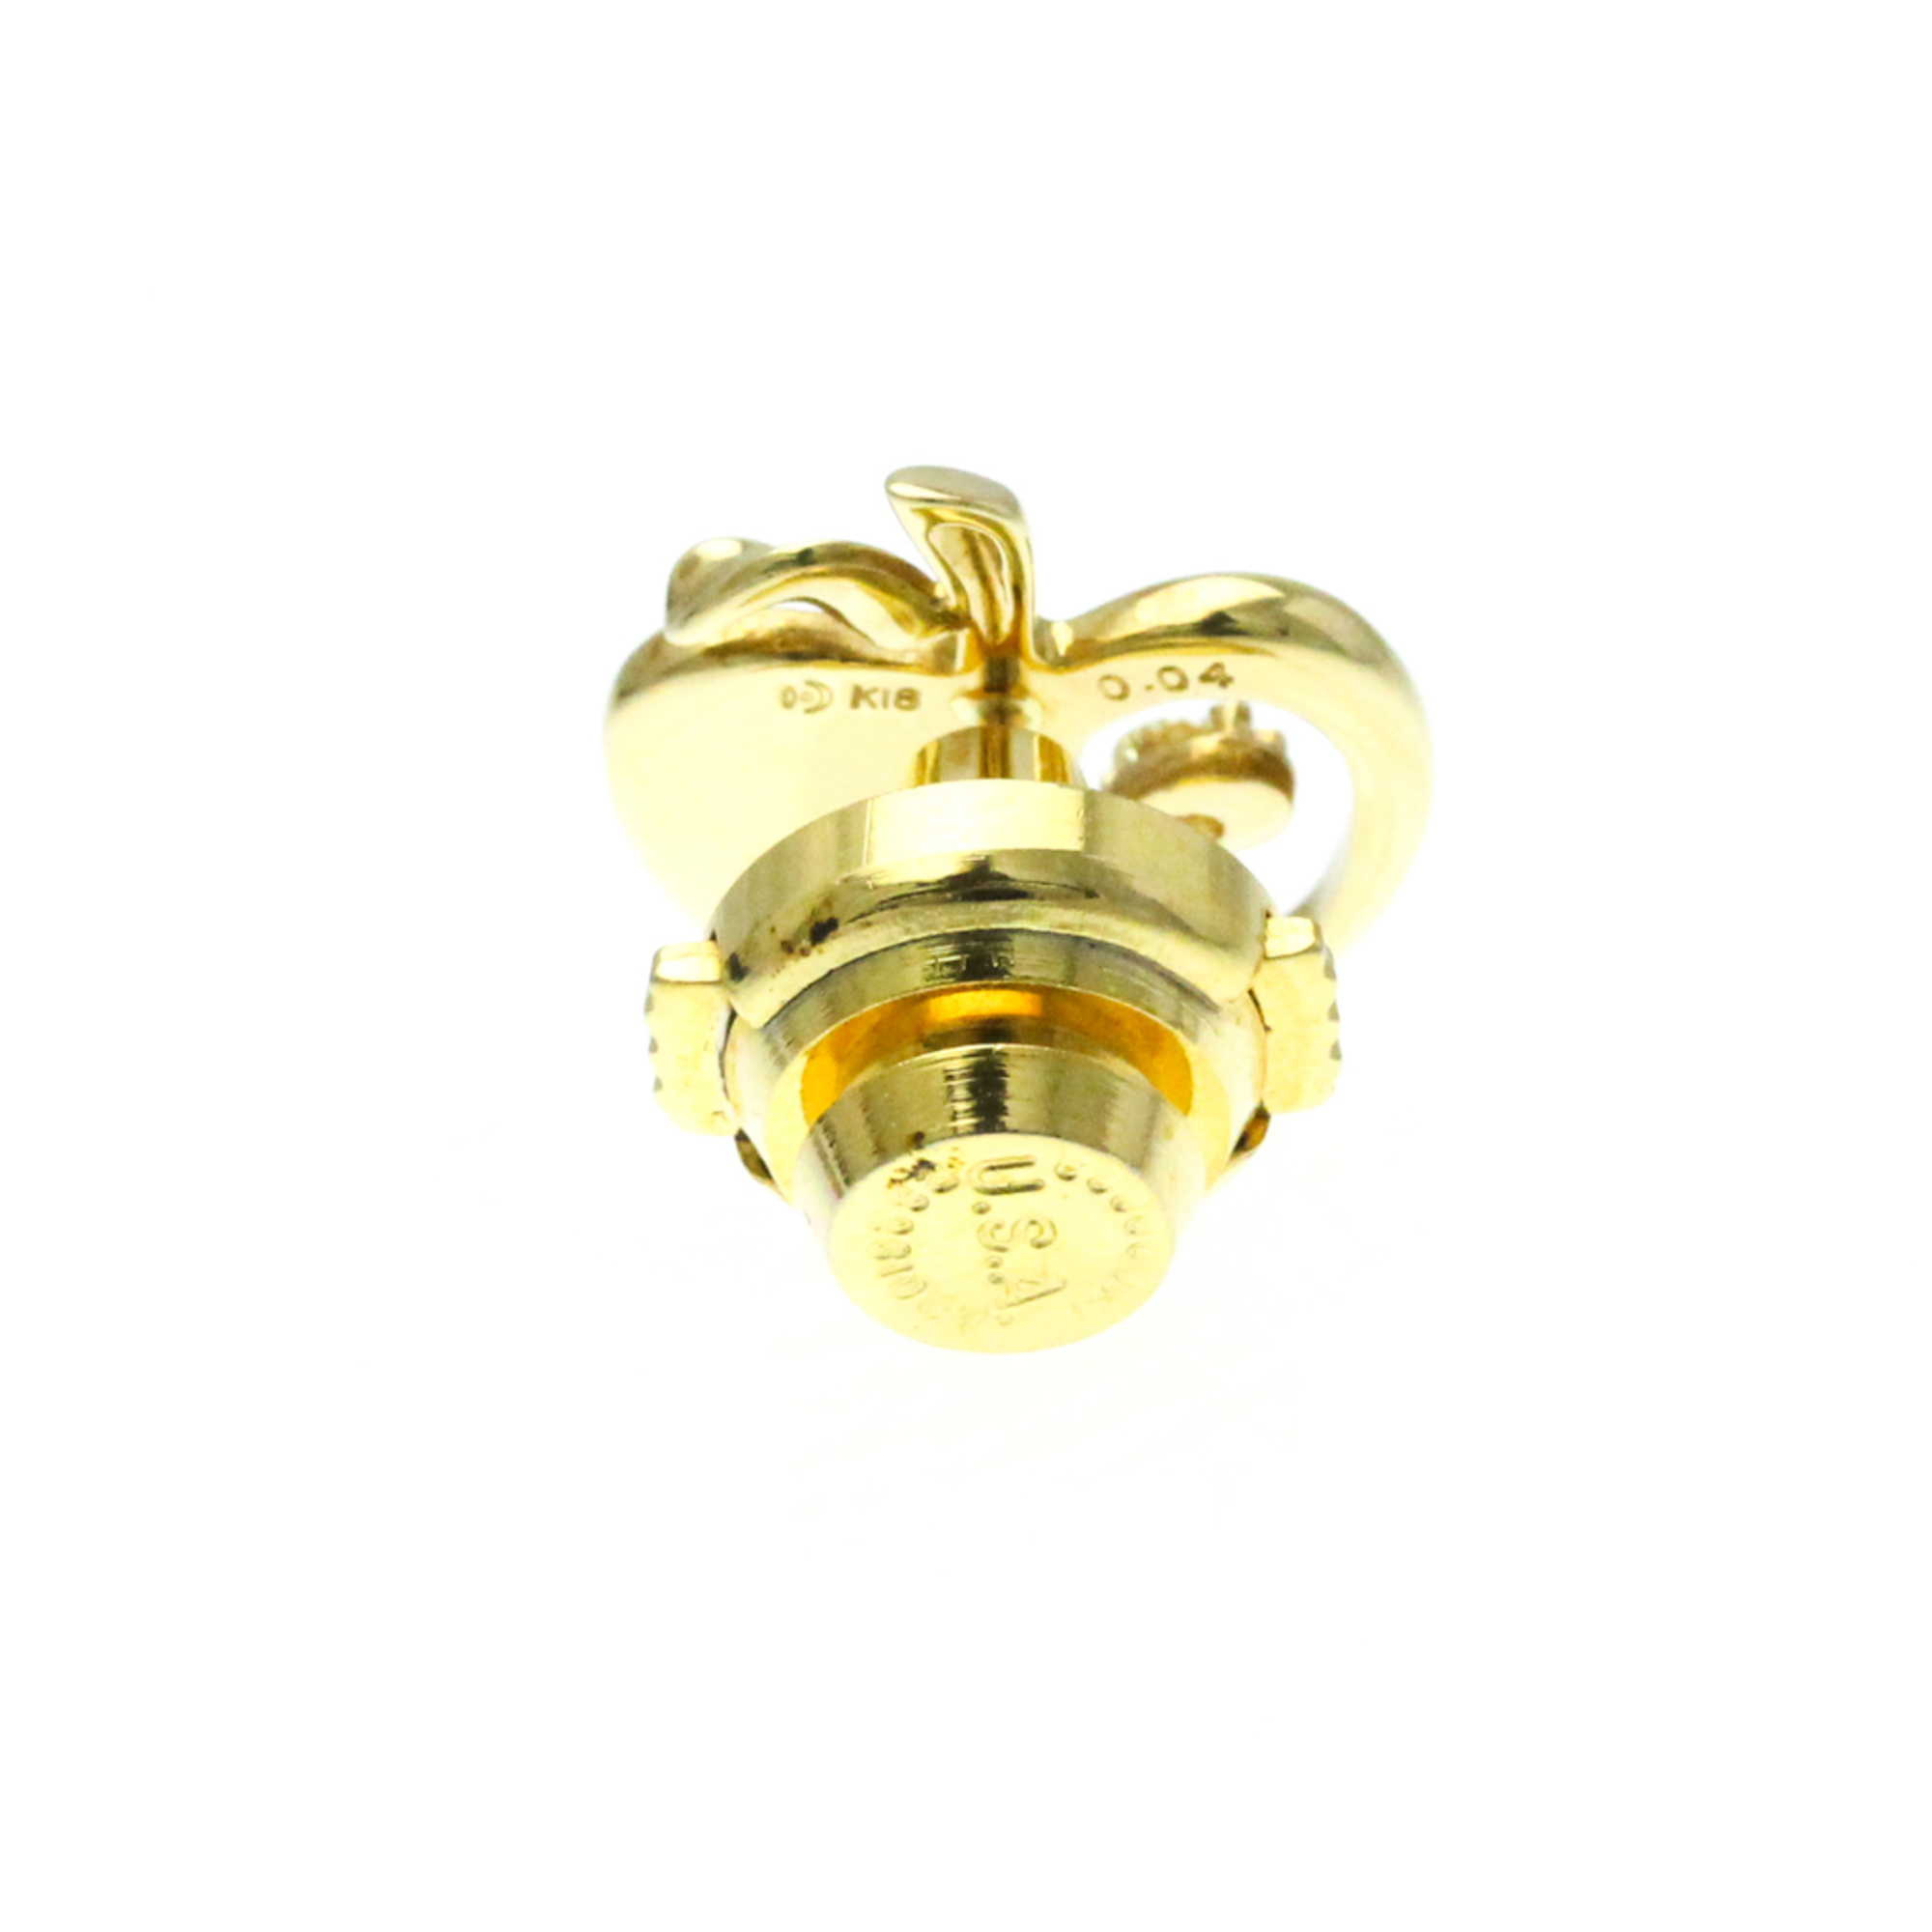 Tasaki Apple Motif Diamond Brooch Gold Diamond Brooch Gold